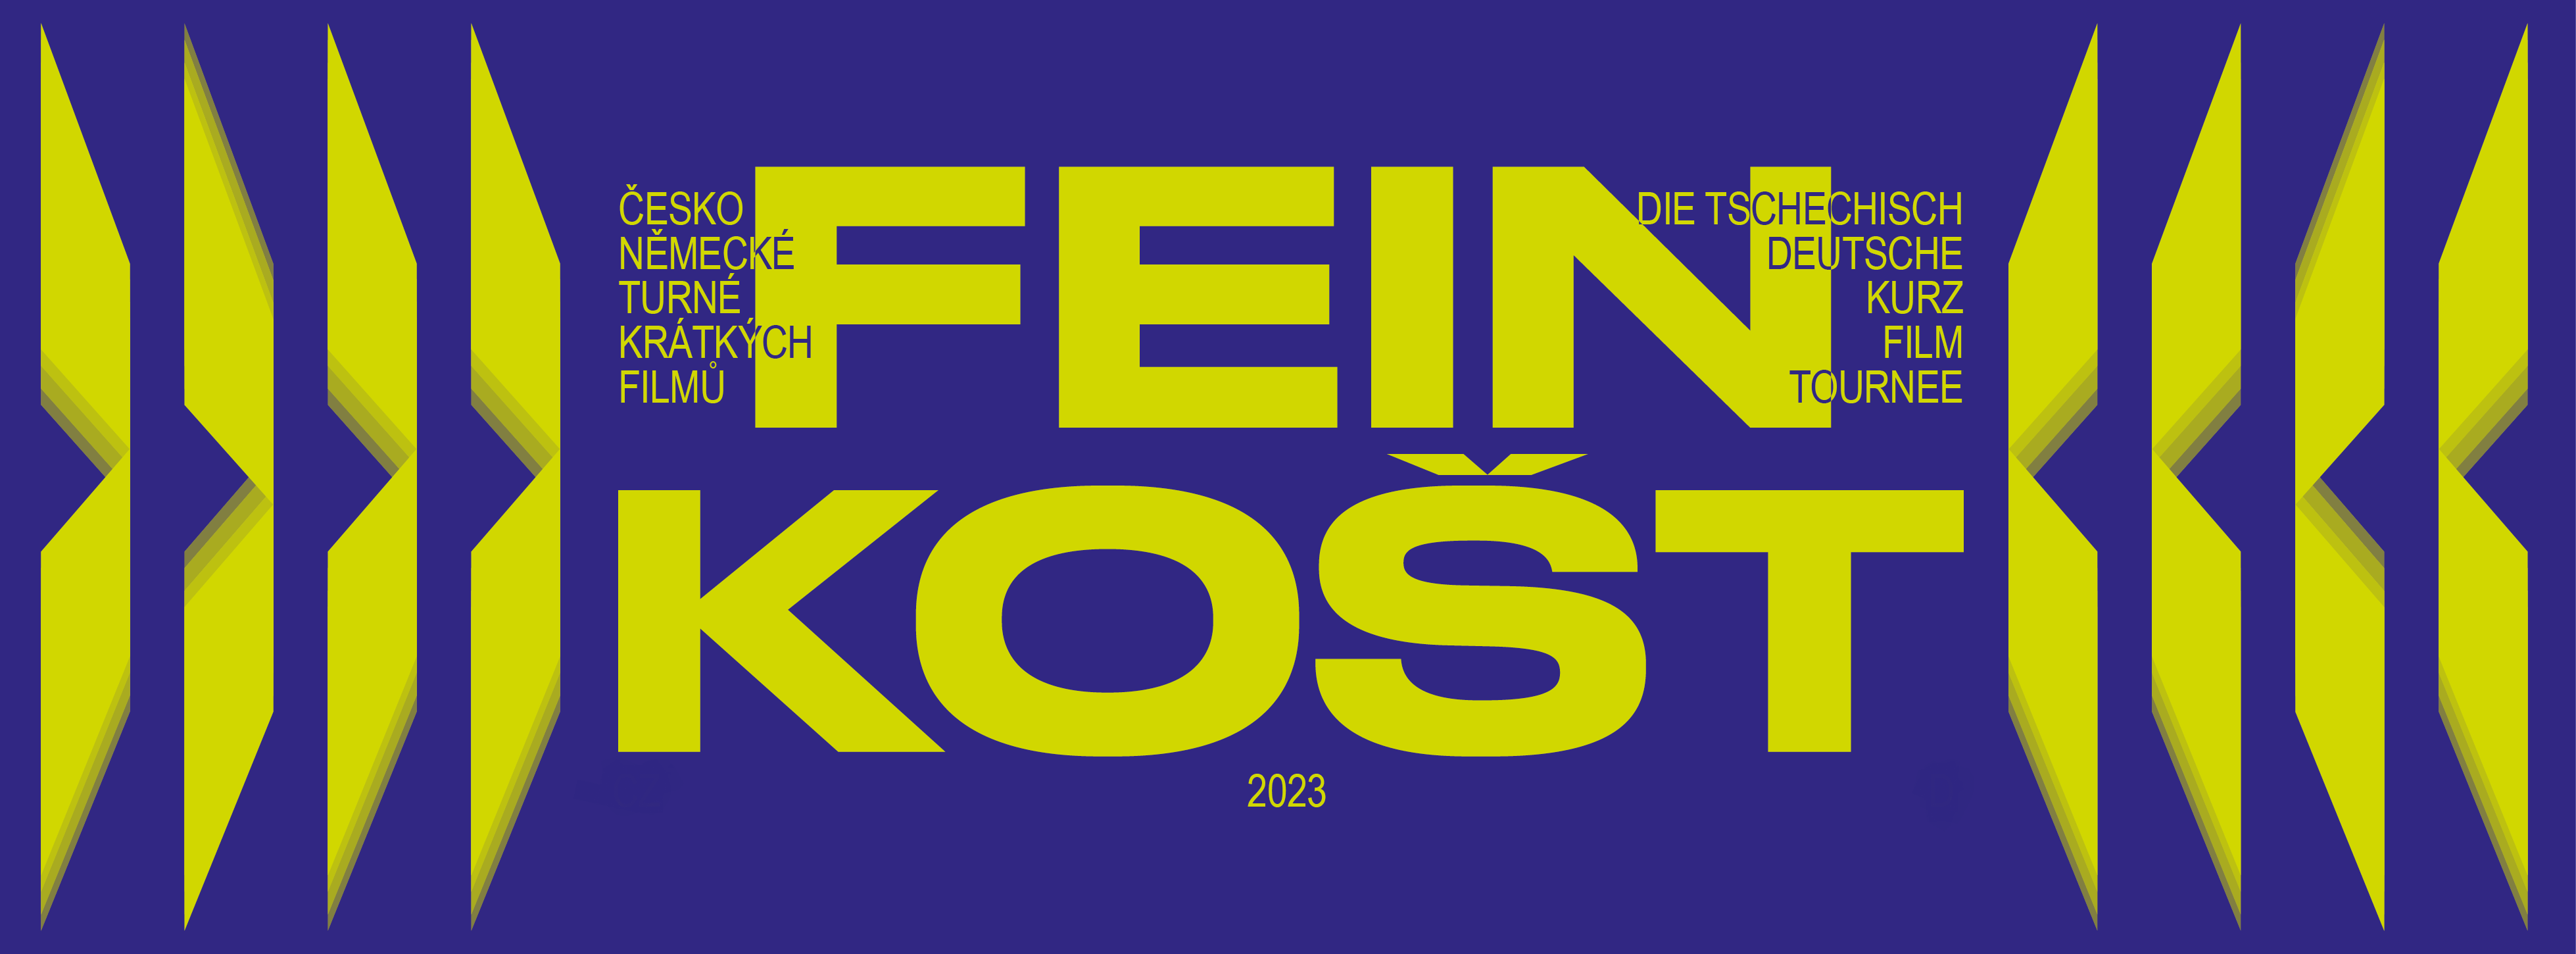 Schriftzug FEINKOŠT gelbgrün auf dunkelblau, grafische Elemente, die den tschechischen Akzent Hatschek aufnehmen und variieren.